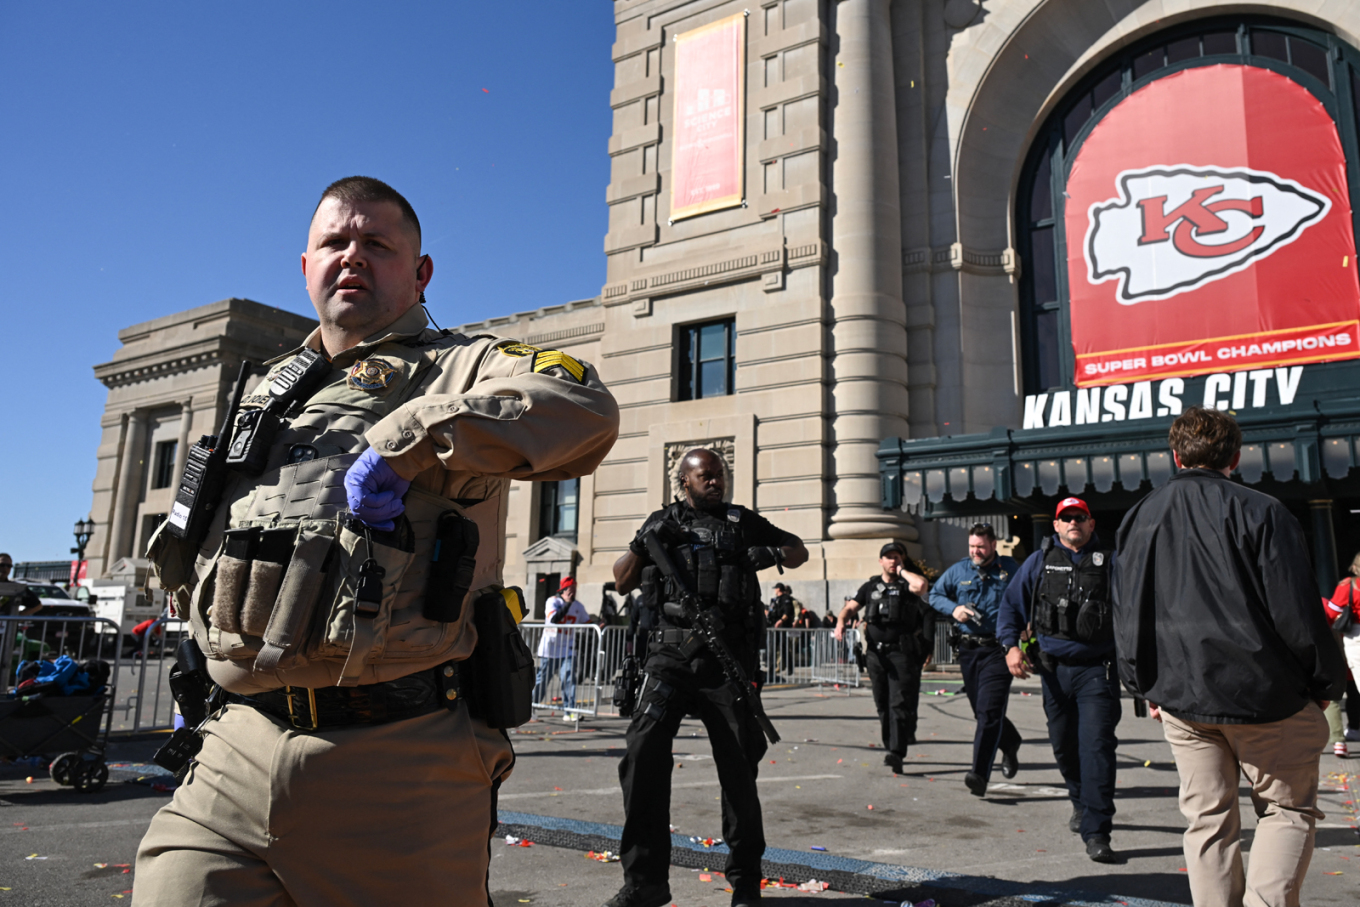 ΗΠΑ: Πανικός στο Κάνσας – Πυροβολισμοί μετά την παρέλαση των νικητών του Super Bowl 